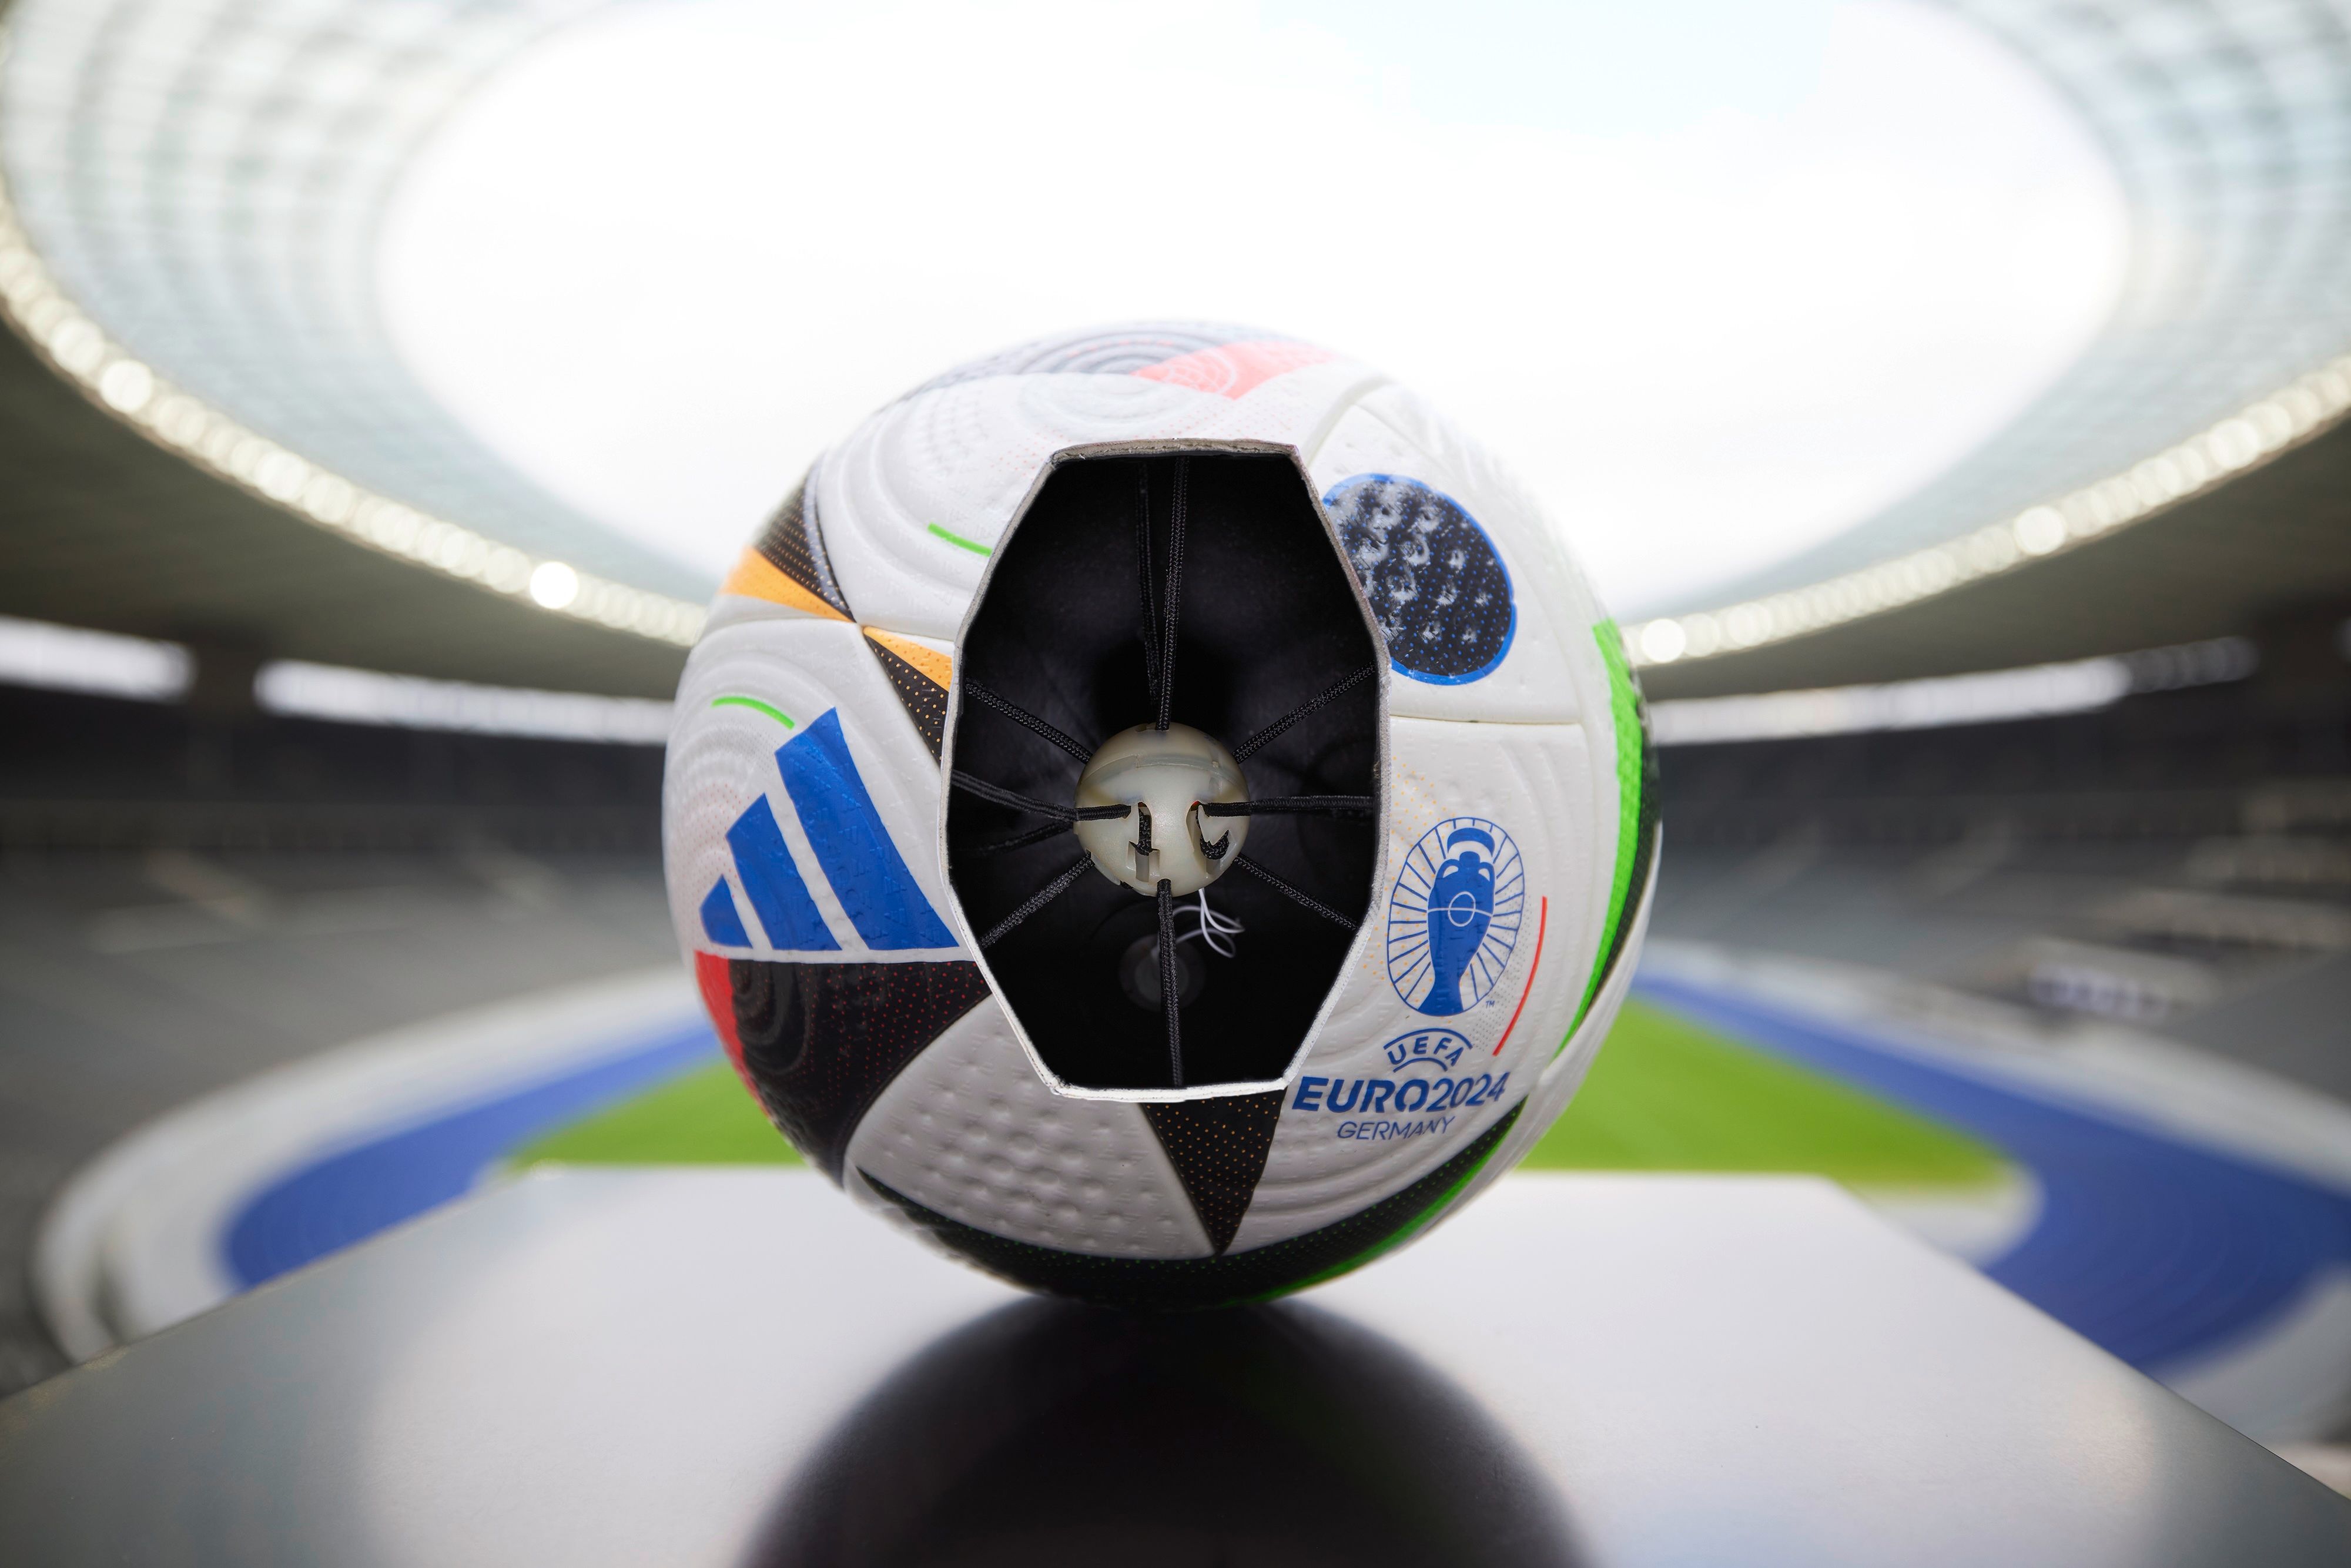 "Fußballliebe": Wie der Hightech-Ball die EM gerecht macht